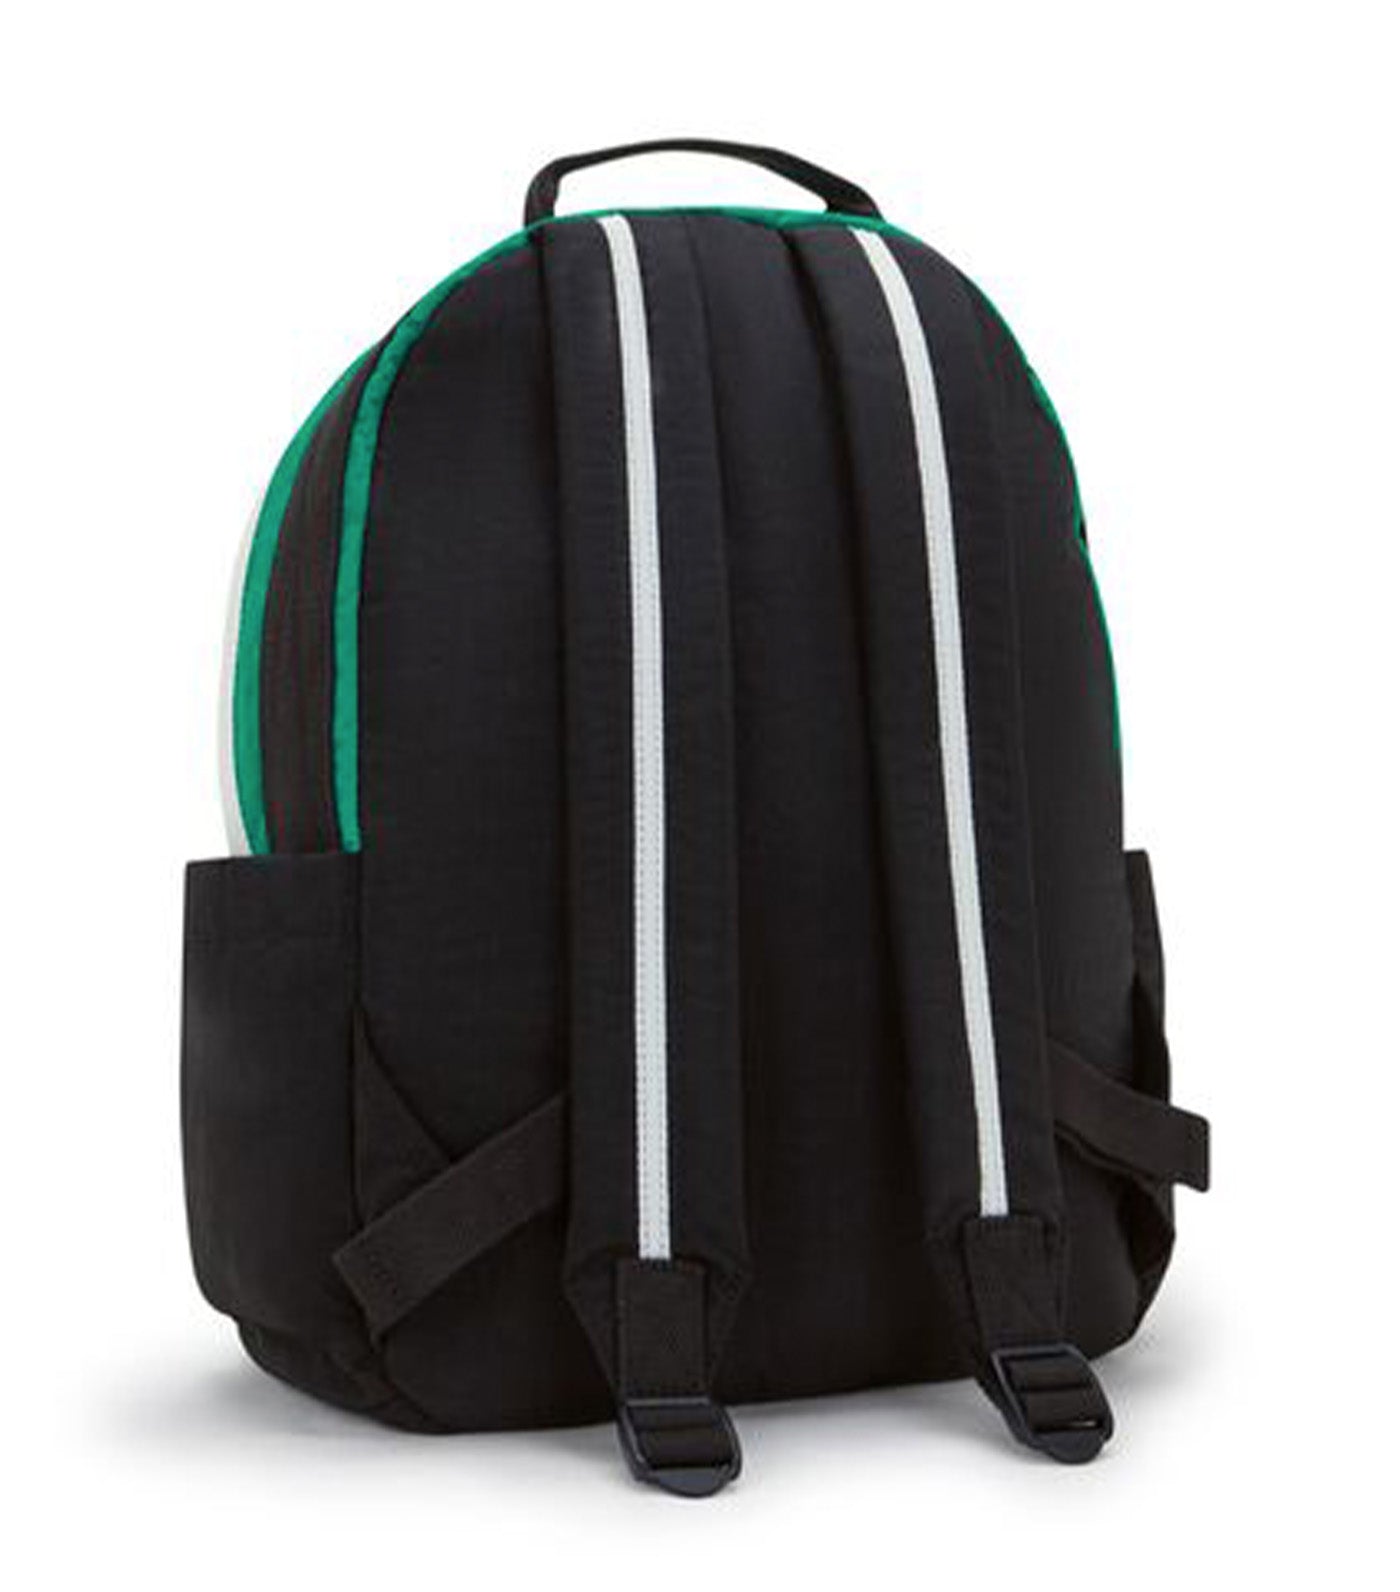 Damien M Deep Green Black BL Fq Backpack